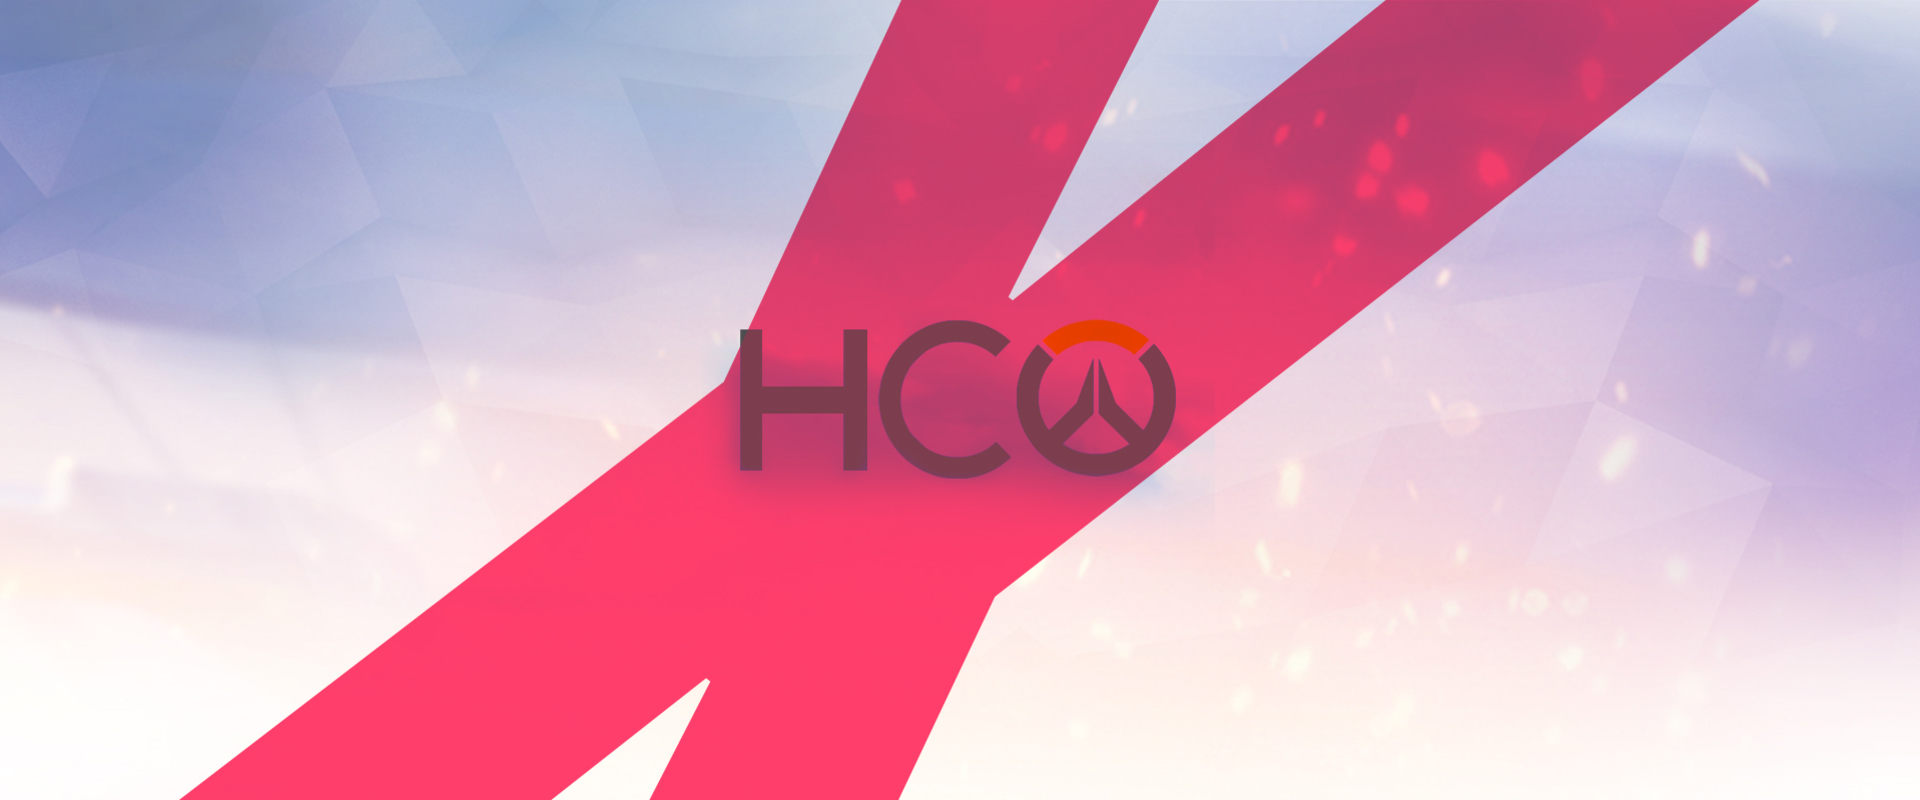 Megszűnt a legnagyobb hazai OW-s discord szerver, a HCO